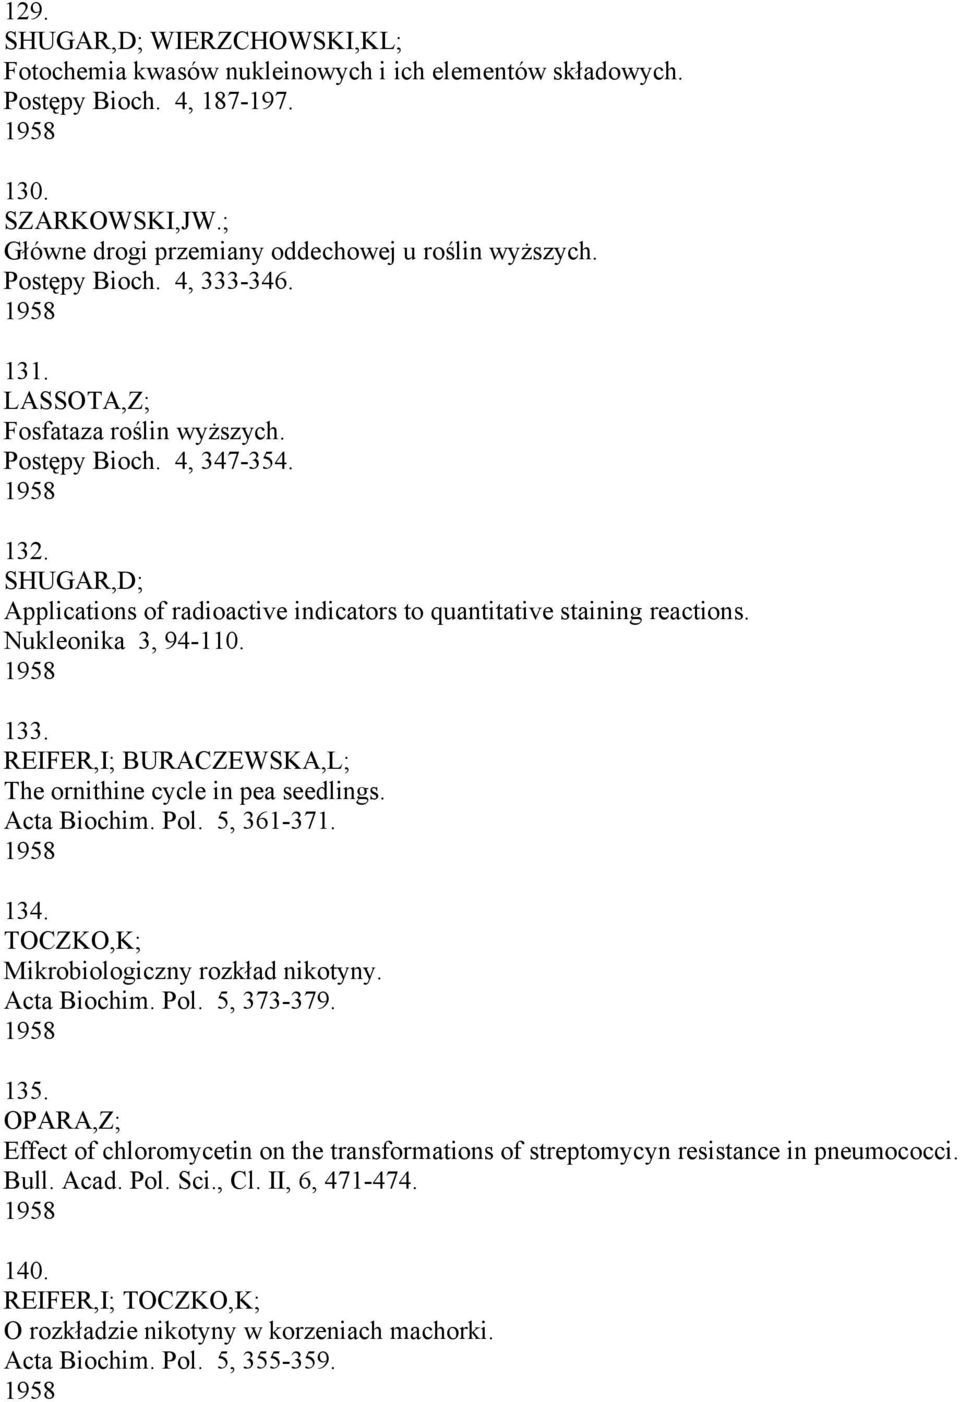 Nukleonika 3, 94-110. 1958 133. REIFER,I; BURACZEWSKA,L; The ornithine cycle in pea seedlings. Acta Biochim. Pol. 5, 361-371. 1958 134. TOCZKO,K; Mikrobiologiczny rozkład nikotyny. Acta Biochim. Pol. 5, 373-379.